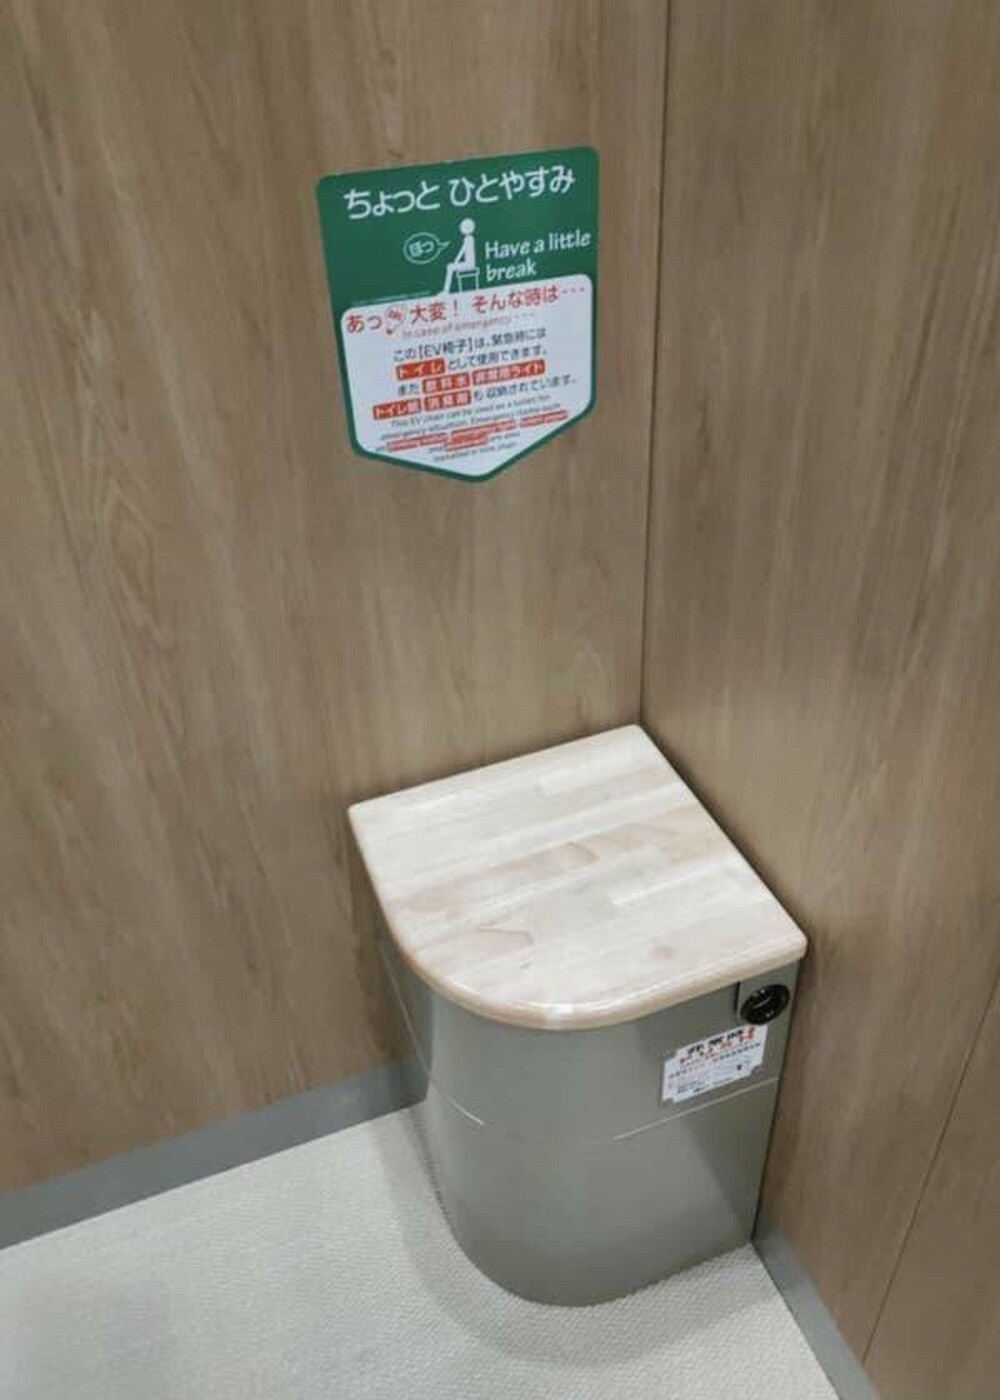 14. В японских лифтах есть туалет на непредвиденный случай